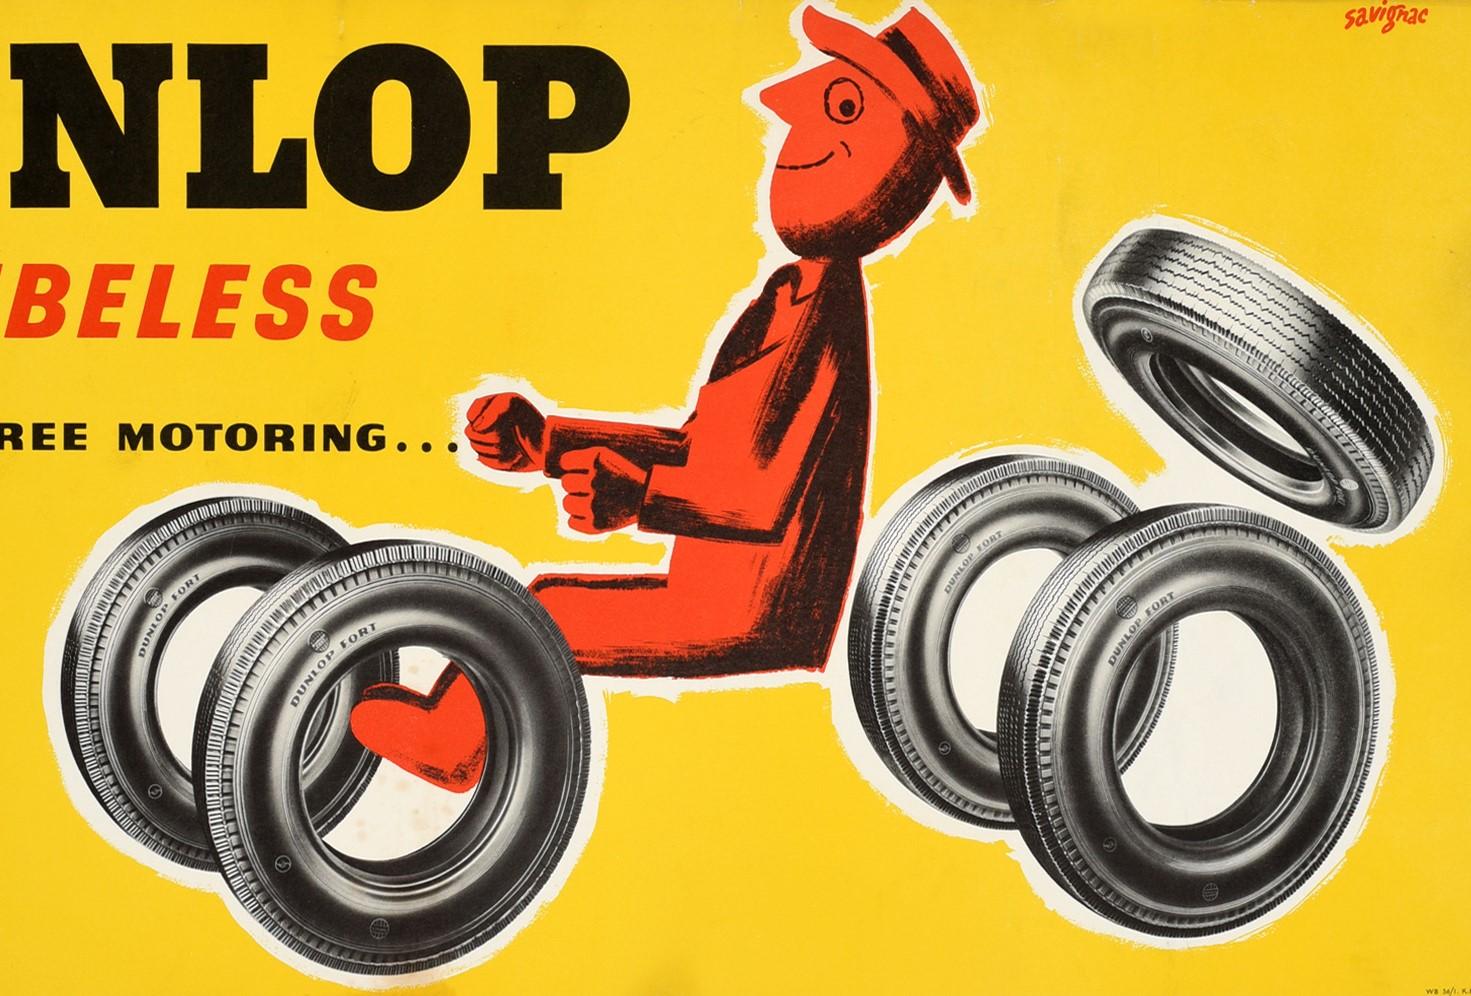 British Original Vintage Tyre Advertising Poster, Dunlop Tubeless for Carefree Motoring